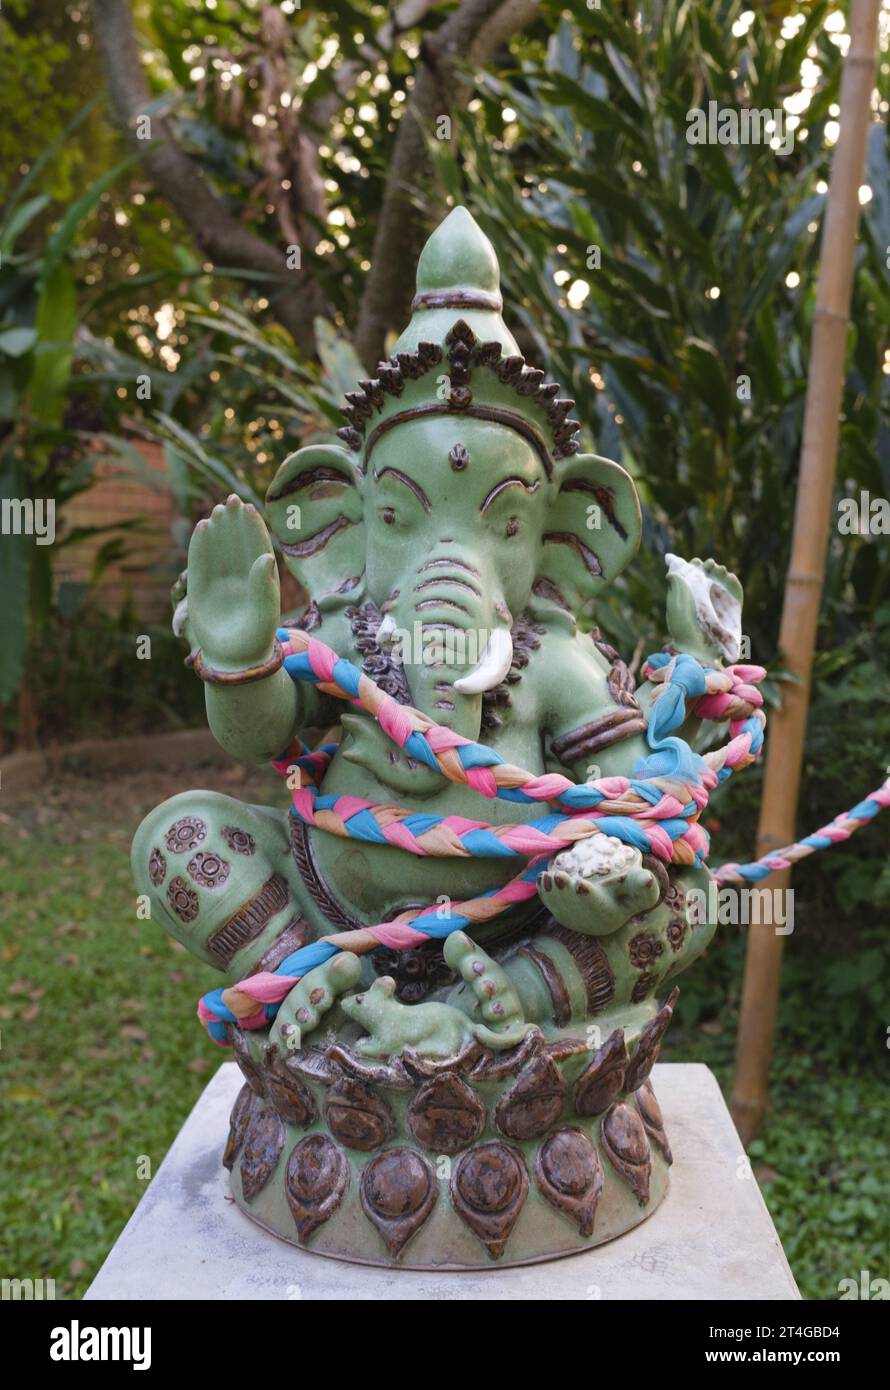 Thailand: Eine Statue des hinduistischen Gottes Ganesh im Garten eines großen Privathauses neben dem Fluss Ping, Chiang Mai. Ganesha, auch Ganesa oder Ganesh, und auch bekannt als Ganapati, Vinayaka und Pillaiyar, ist eine der bekanntesten und am weitesten verehrten Gottheiten im Hindu-pantheon. Sein Bild ist in Indien und Nepal zu finden. Die Hindu-Sekten verehren ihn, unabhängig von seiner Zugehörigkeit. Die Hingabe an Ganesha ist weit verbreitet und erstreckt sich auf Jains, Buddhisten und über Indien hinaus. Stockfoto